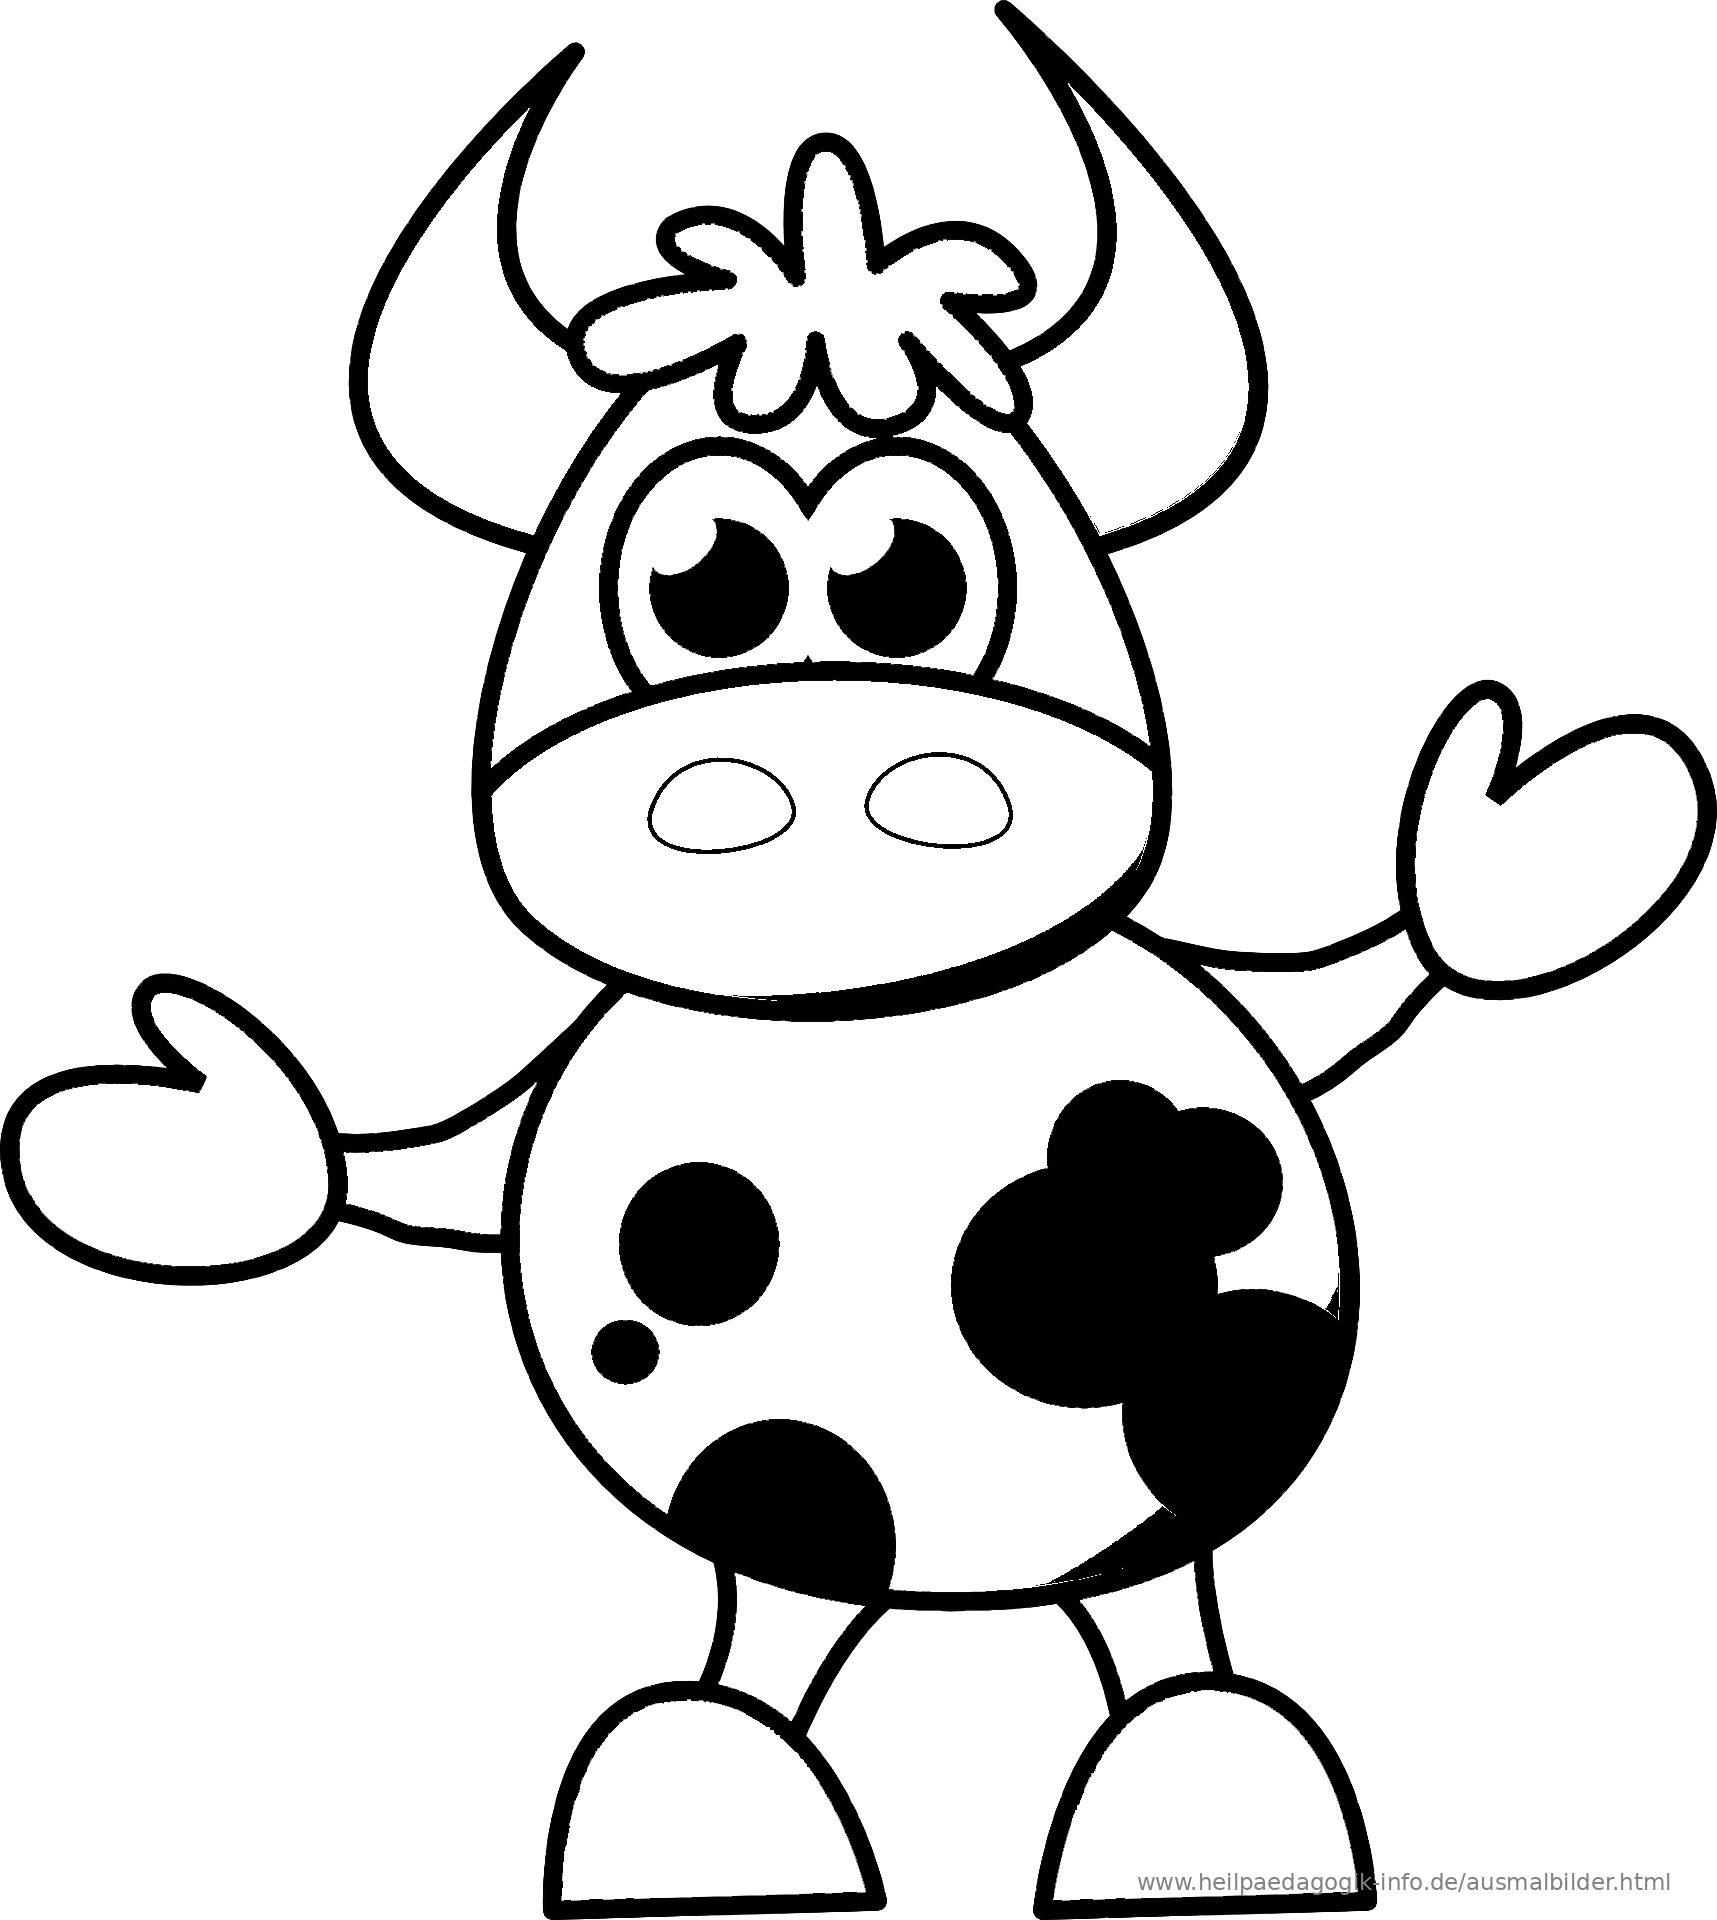 Раскраски коровки для детей. Коровка. Раскраска. Коровка раскраска для детей. Корова раскраска для детей. Коровка черно белая.